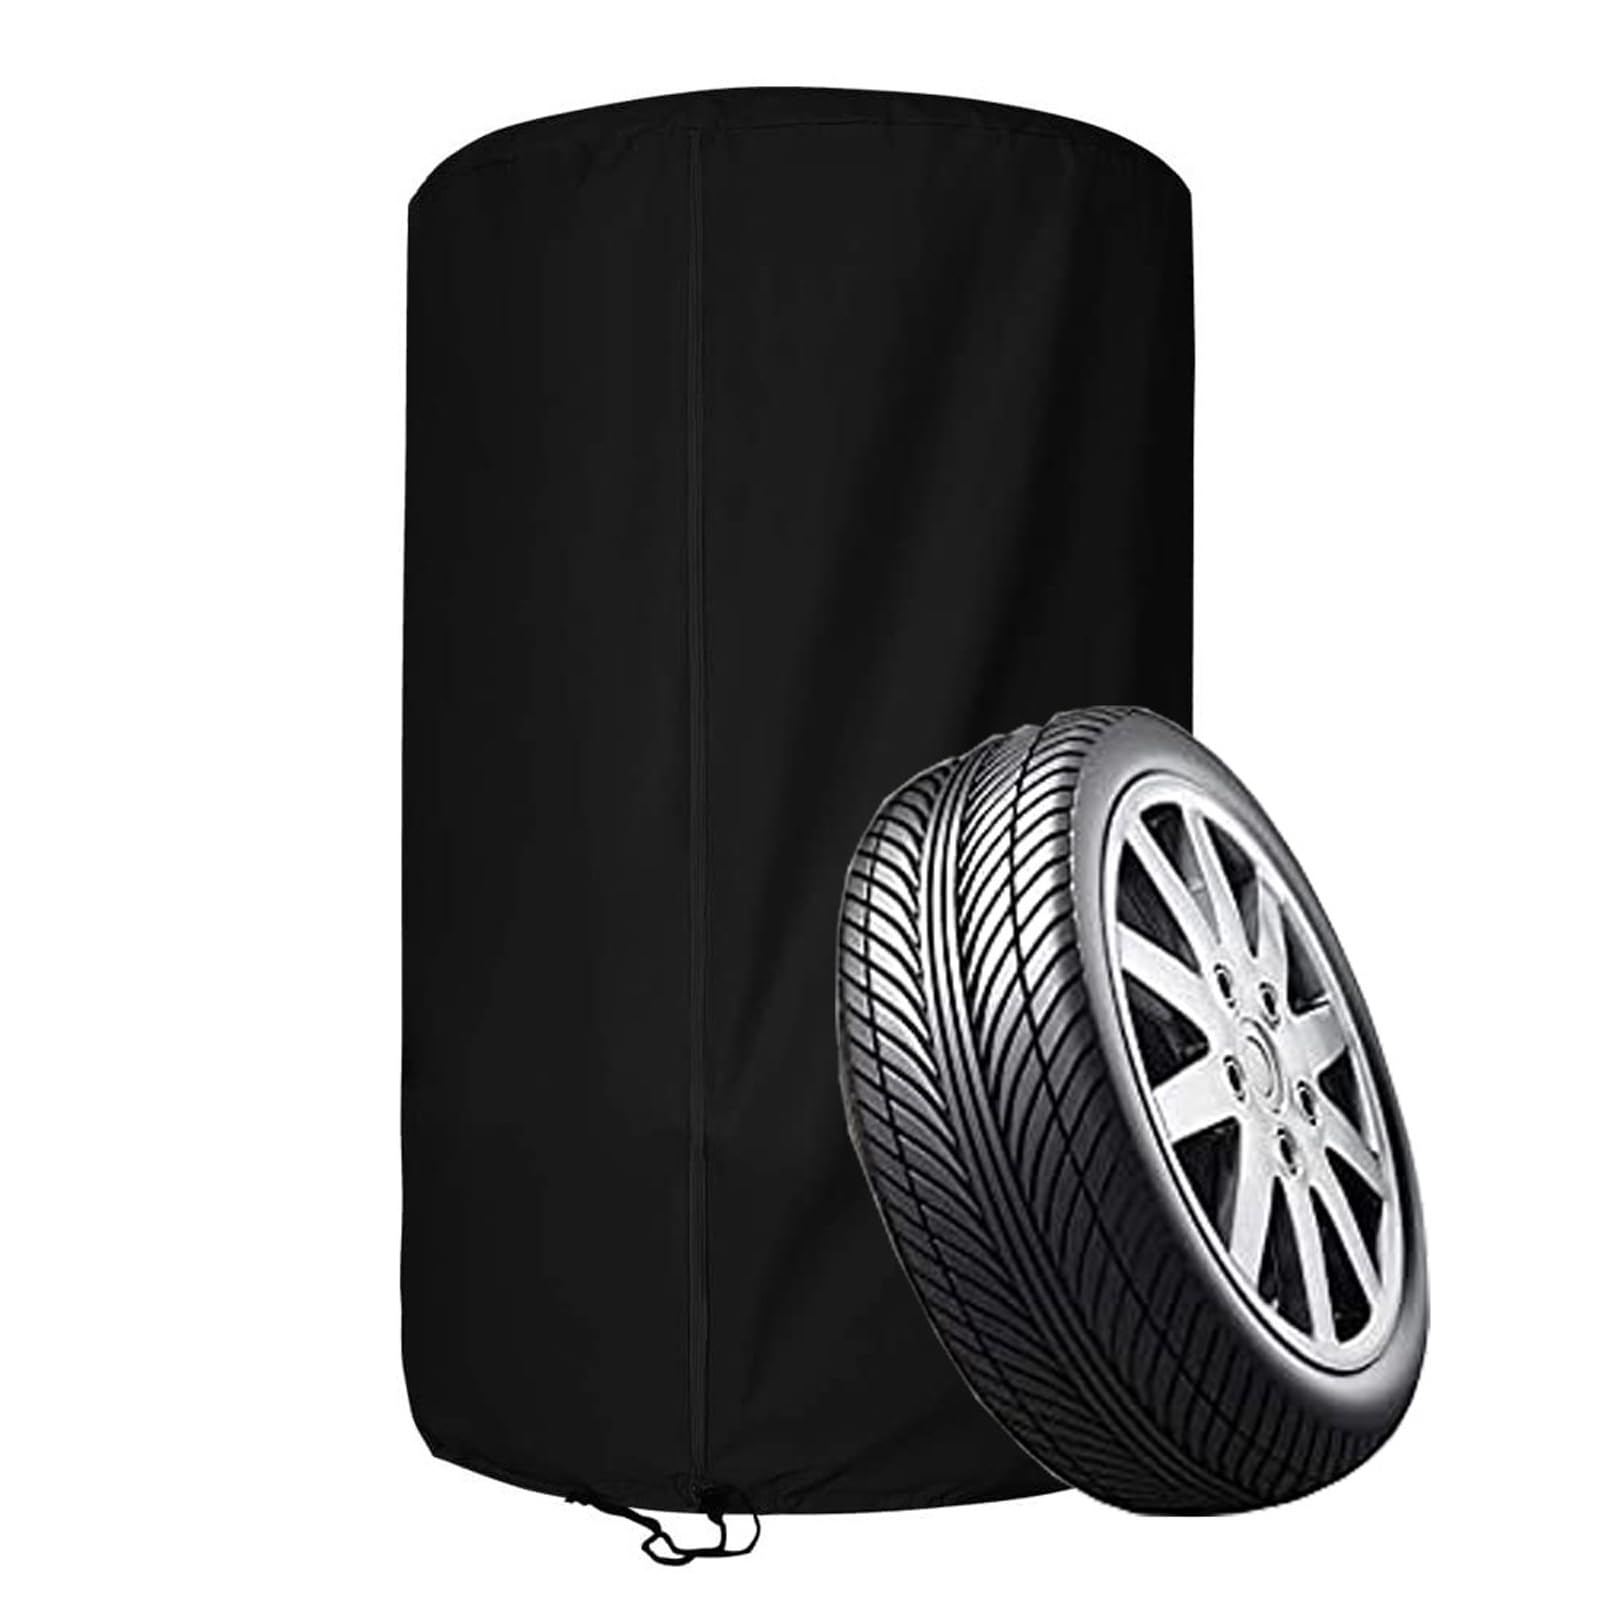 Reifenabdeckung für 4 Reifen, wasserdichte Reifenschutzhülle für 4 Autoreifen, 210D /420D OxfordAufbewahrungstasche für 4 Ersatzreifen mit Reißverschluss(Size:420D Oxford ：82 * 120cm,Color:Black) von Crysterris